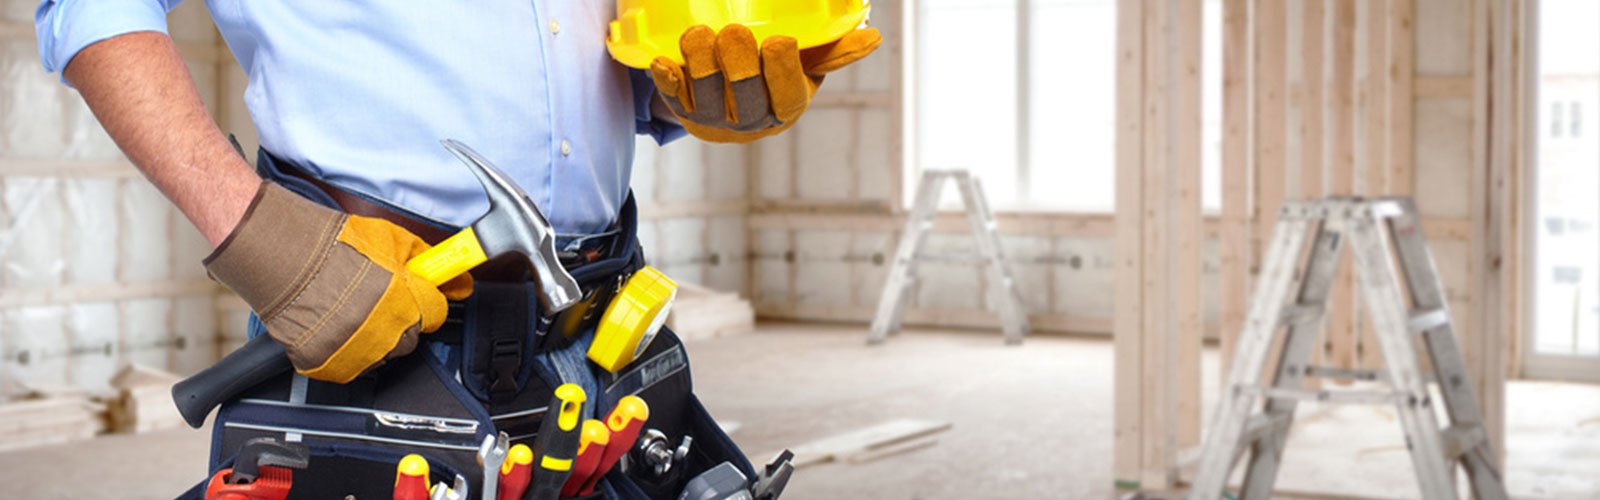 Bauarbeiter auf einer Baustelle mit gelbem Helm in der Hand